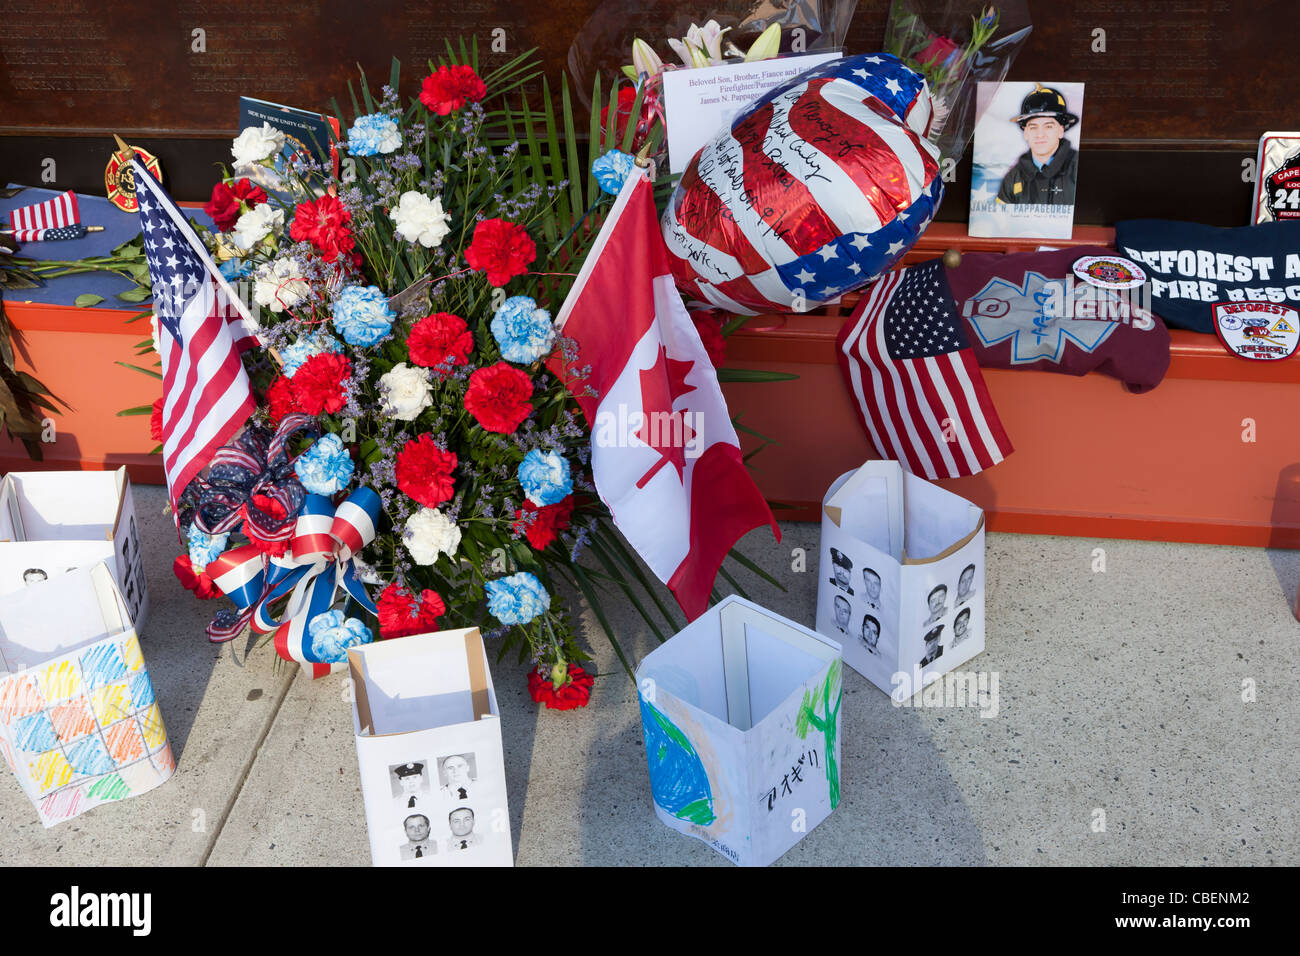 Recuerdos y memorias de aquellos perdidos en los eventos del 11 de septiembre dejaron en el muro conmemorativo de los bomberos de la ciudad de Nueva York. Foto de stock